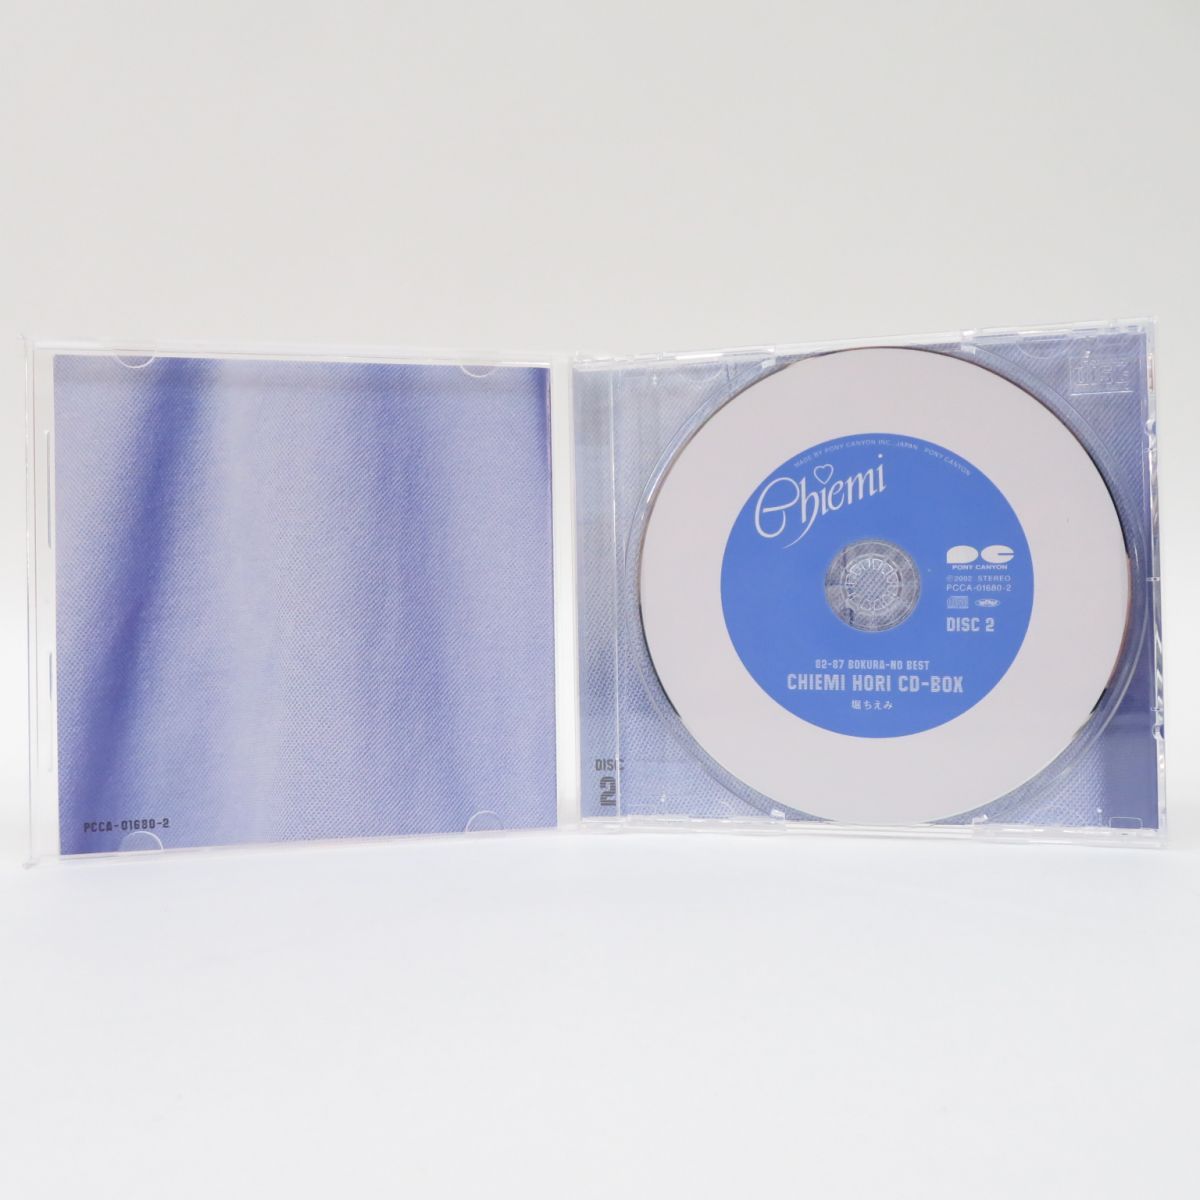 堀ちえみ CD-BOX ~ぼくらのベスト 82-87 - CD